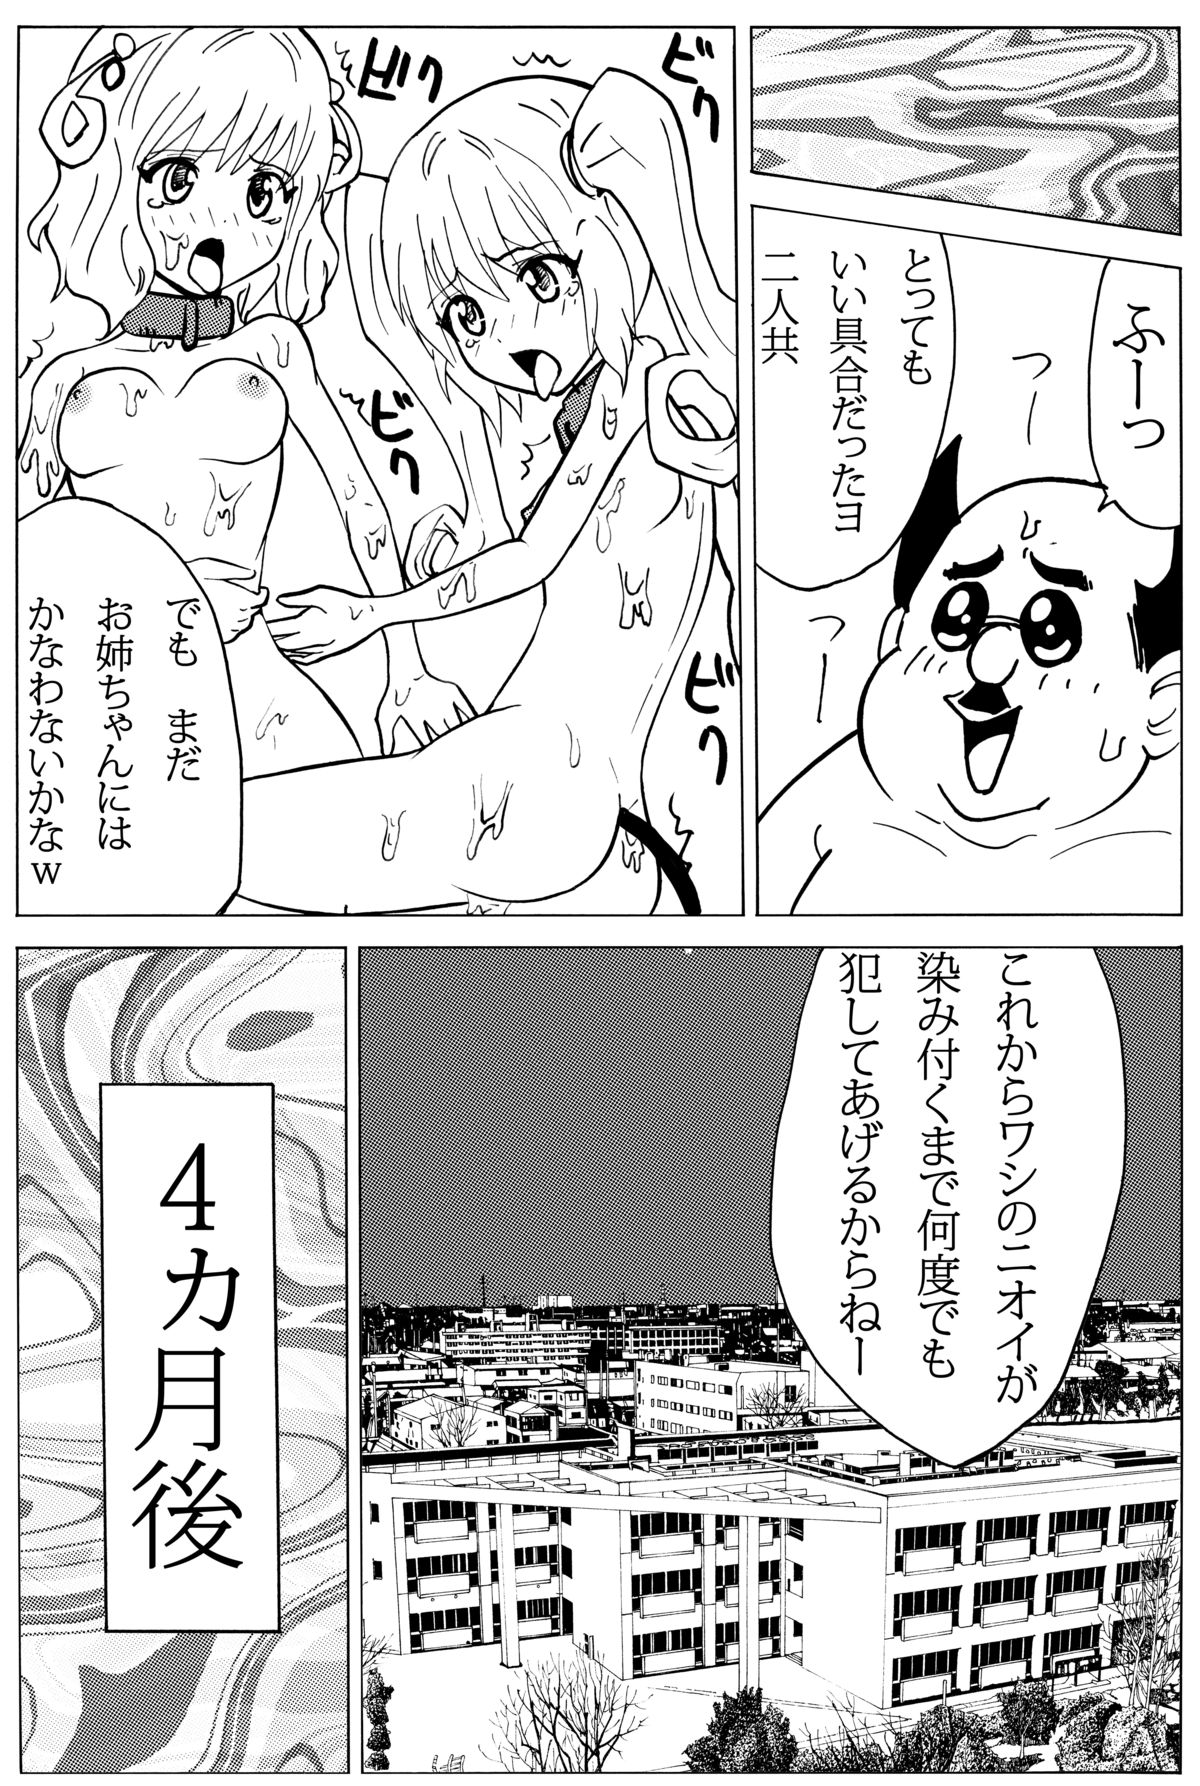 [oni puni] chiisana oshiri ni buchikonde! (ToLOVEru-trouble-) [DL version] page 20 full